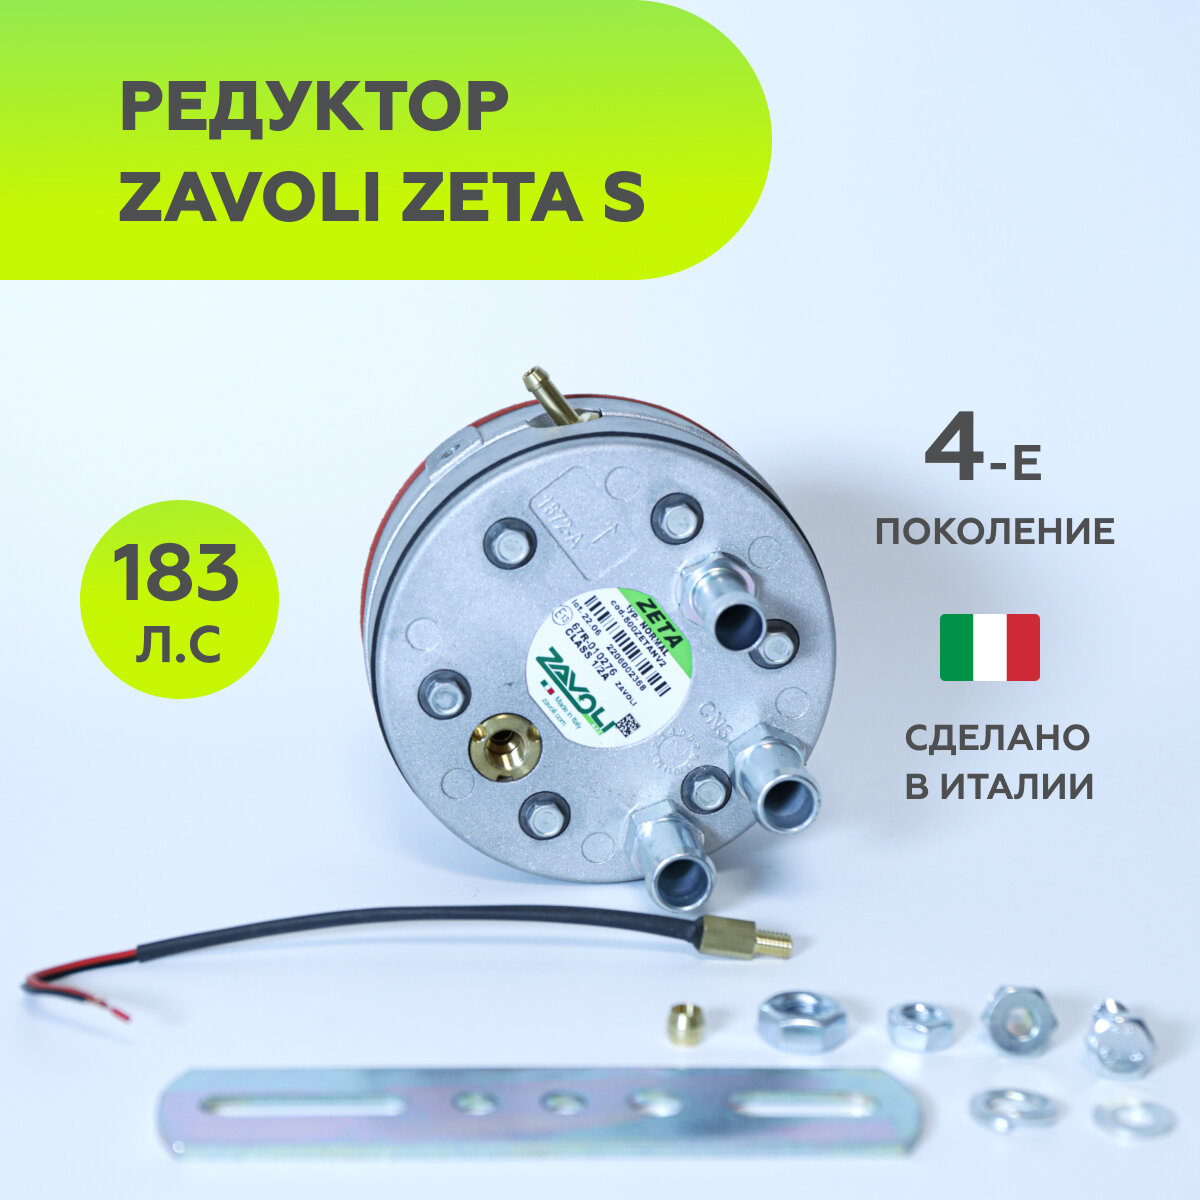 Редуктор 4-го поколения ГБО ZAVOLI Zeta N до 183 л. с. с датчиком температуры (оригинал)